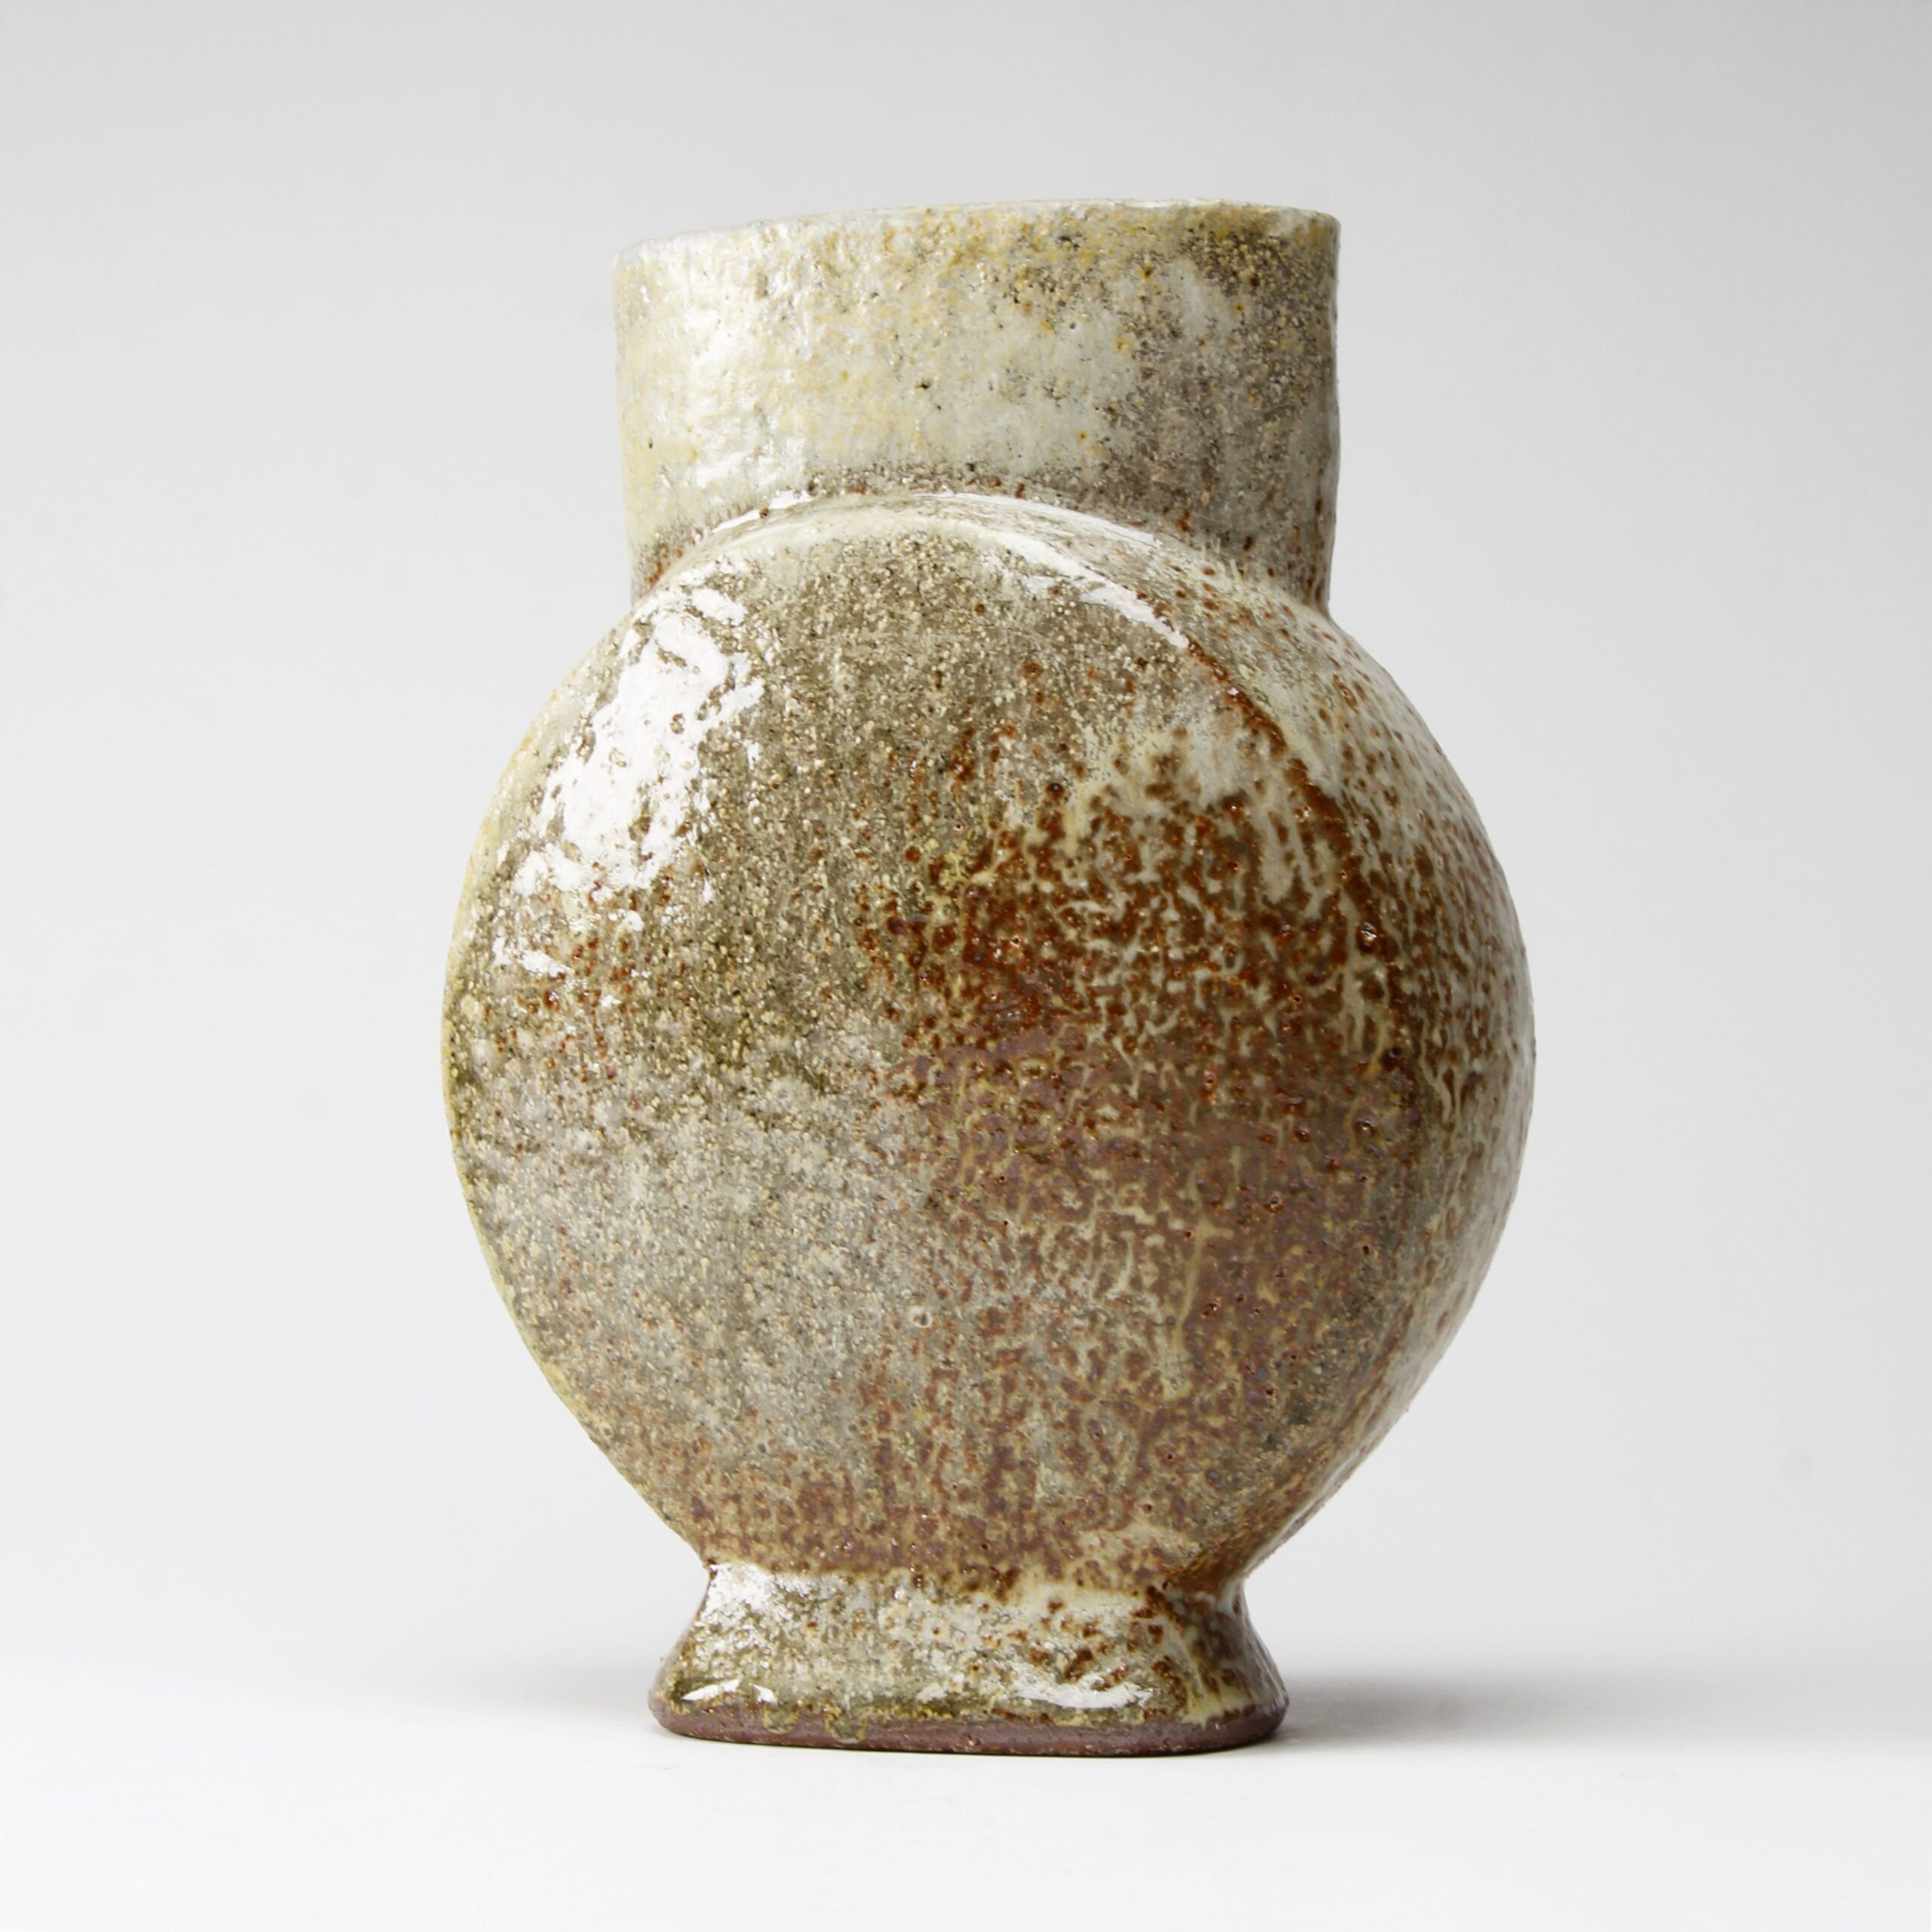 Bruce Cochrane: Vase Product Image 3 of 4